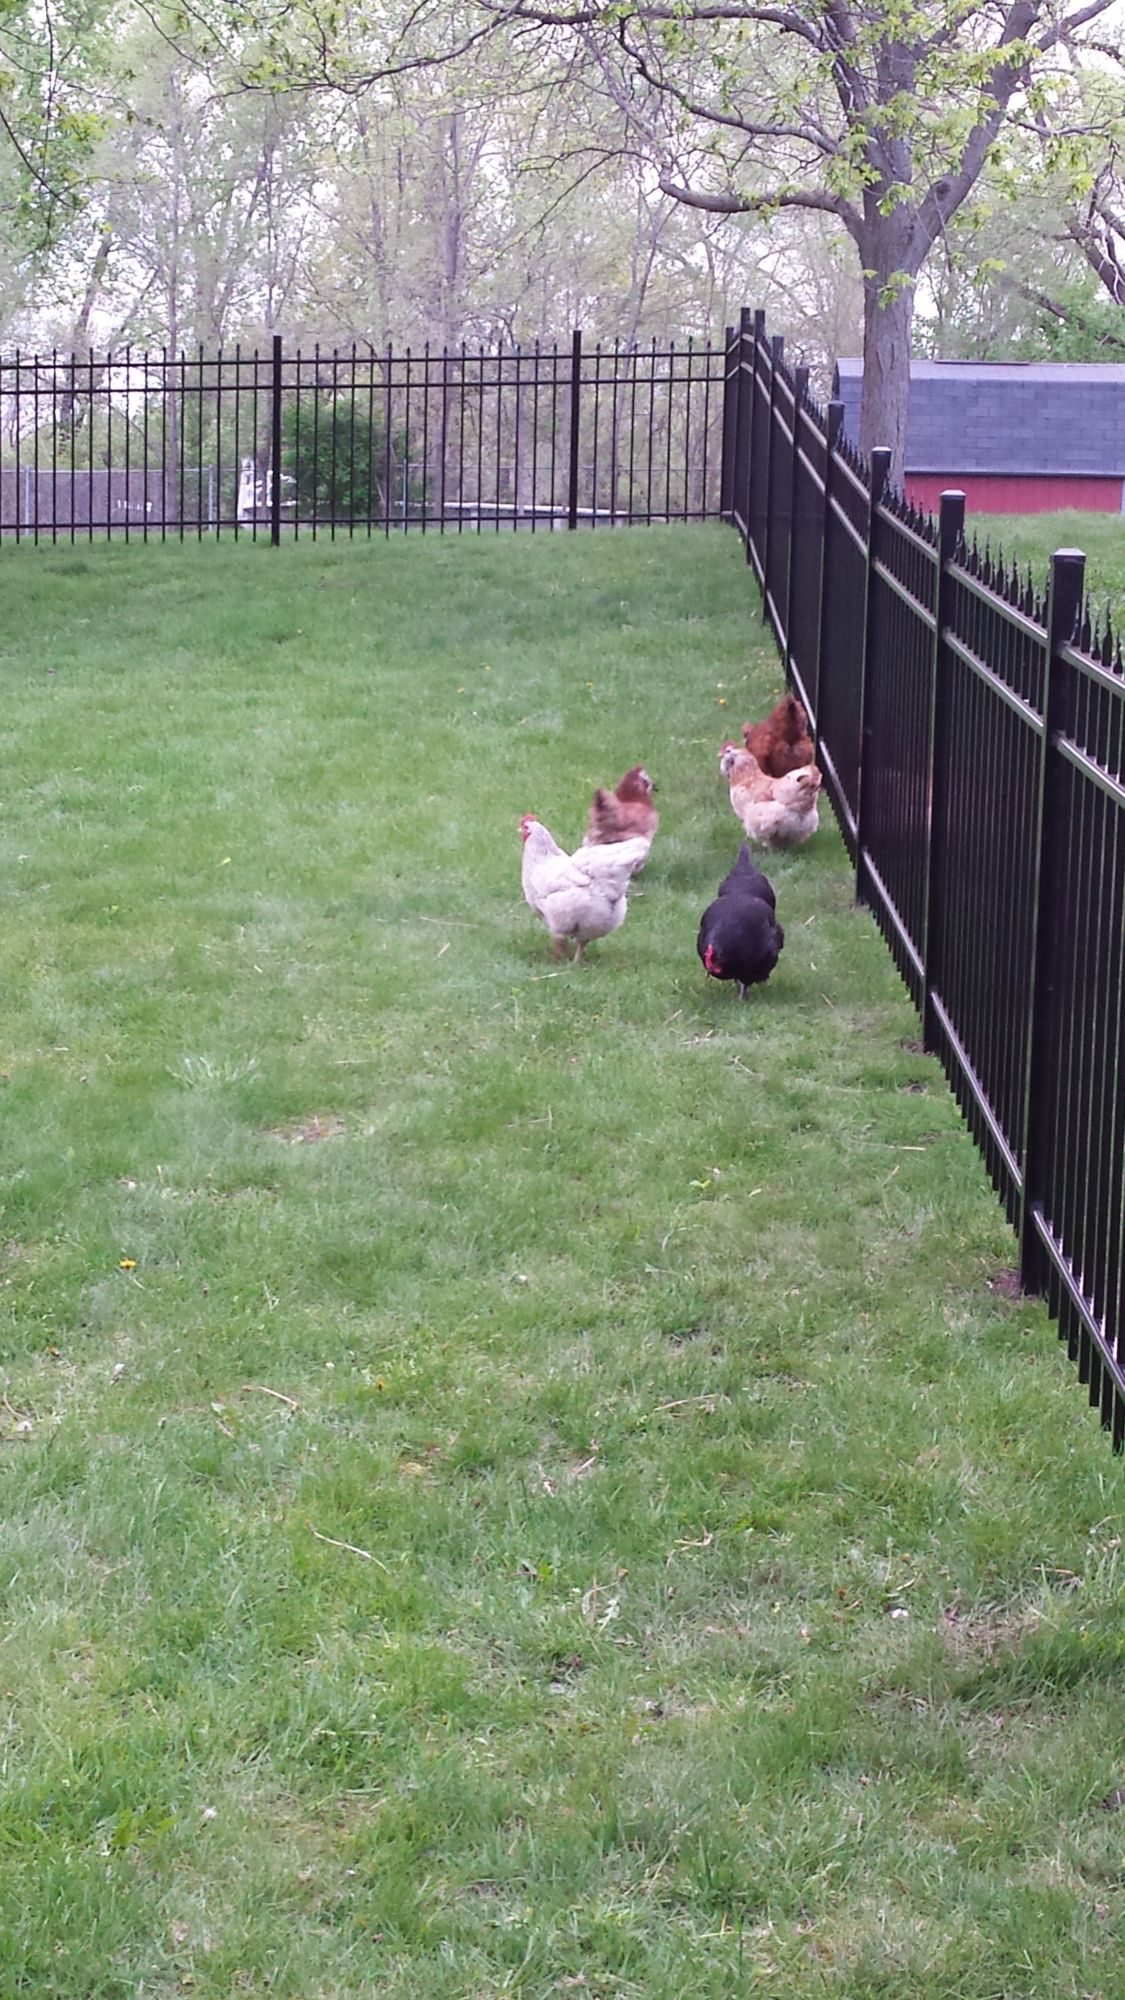 my chickies walking around my backyard!